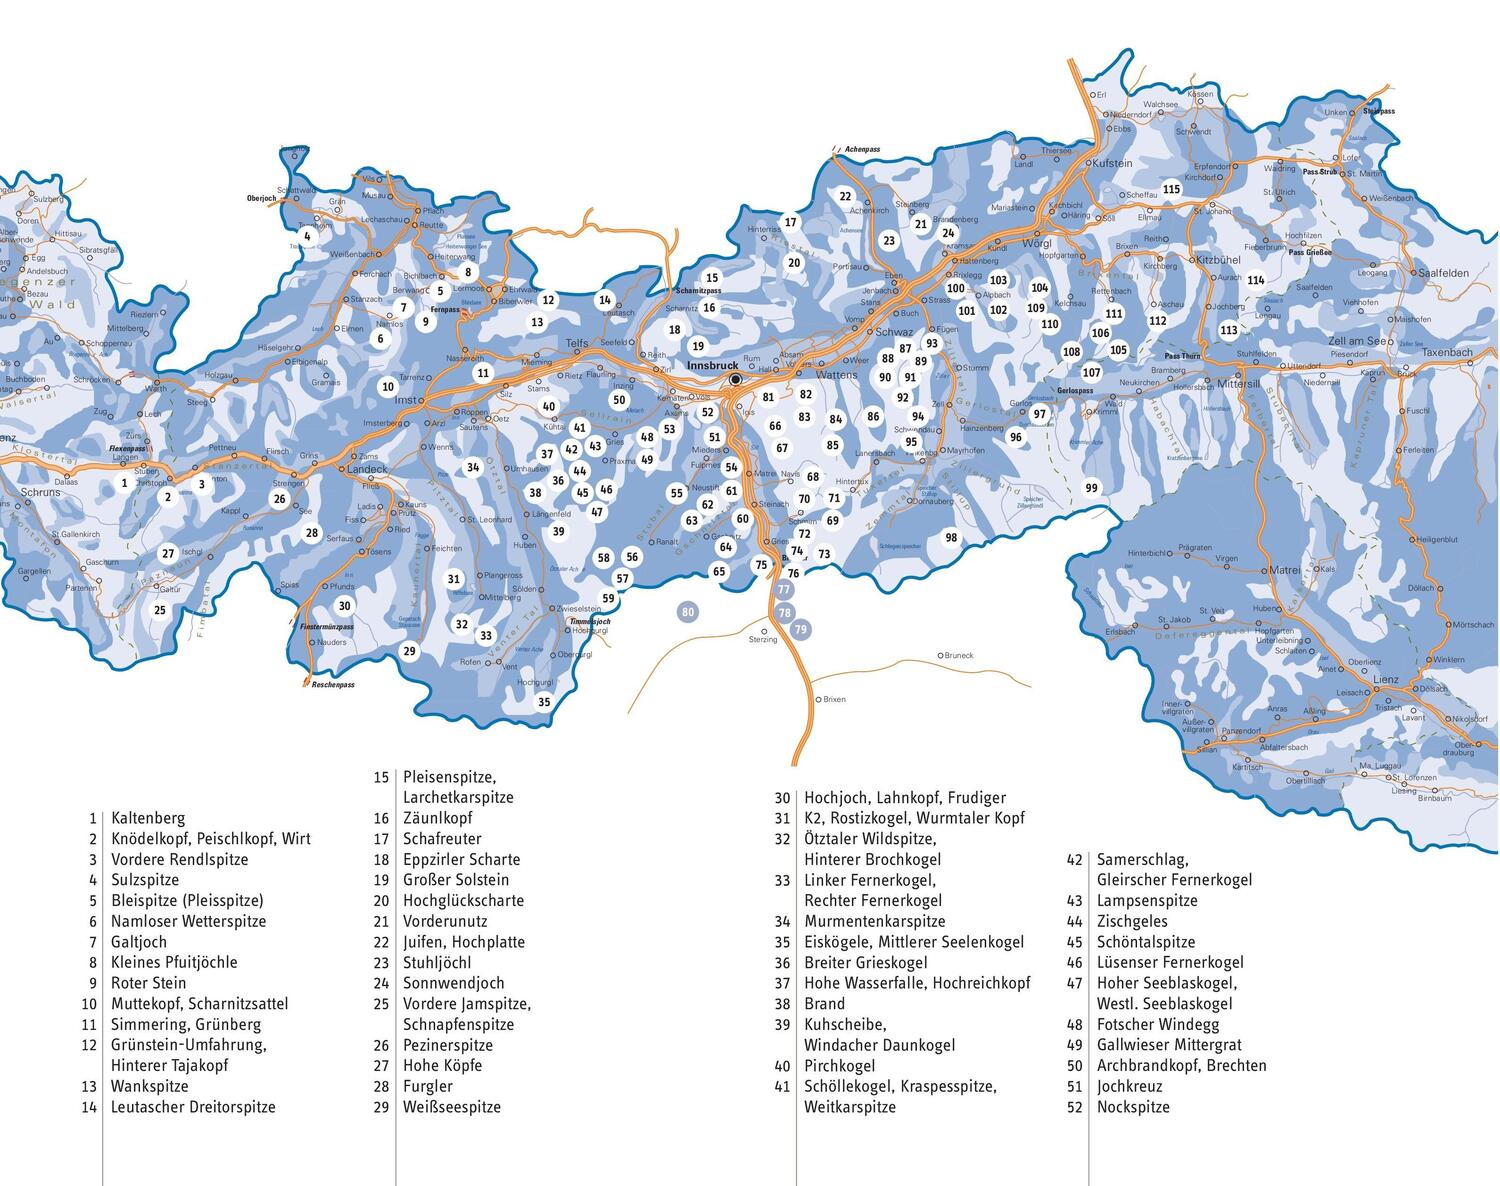 Bild: 9783710767661 | Tiroler Skitouren Handbuch | Über 150 Berge für Einsteiger und Profis